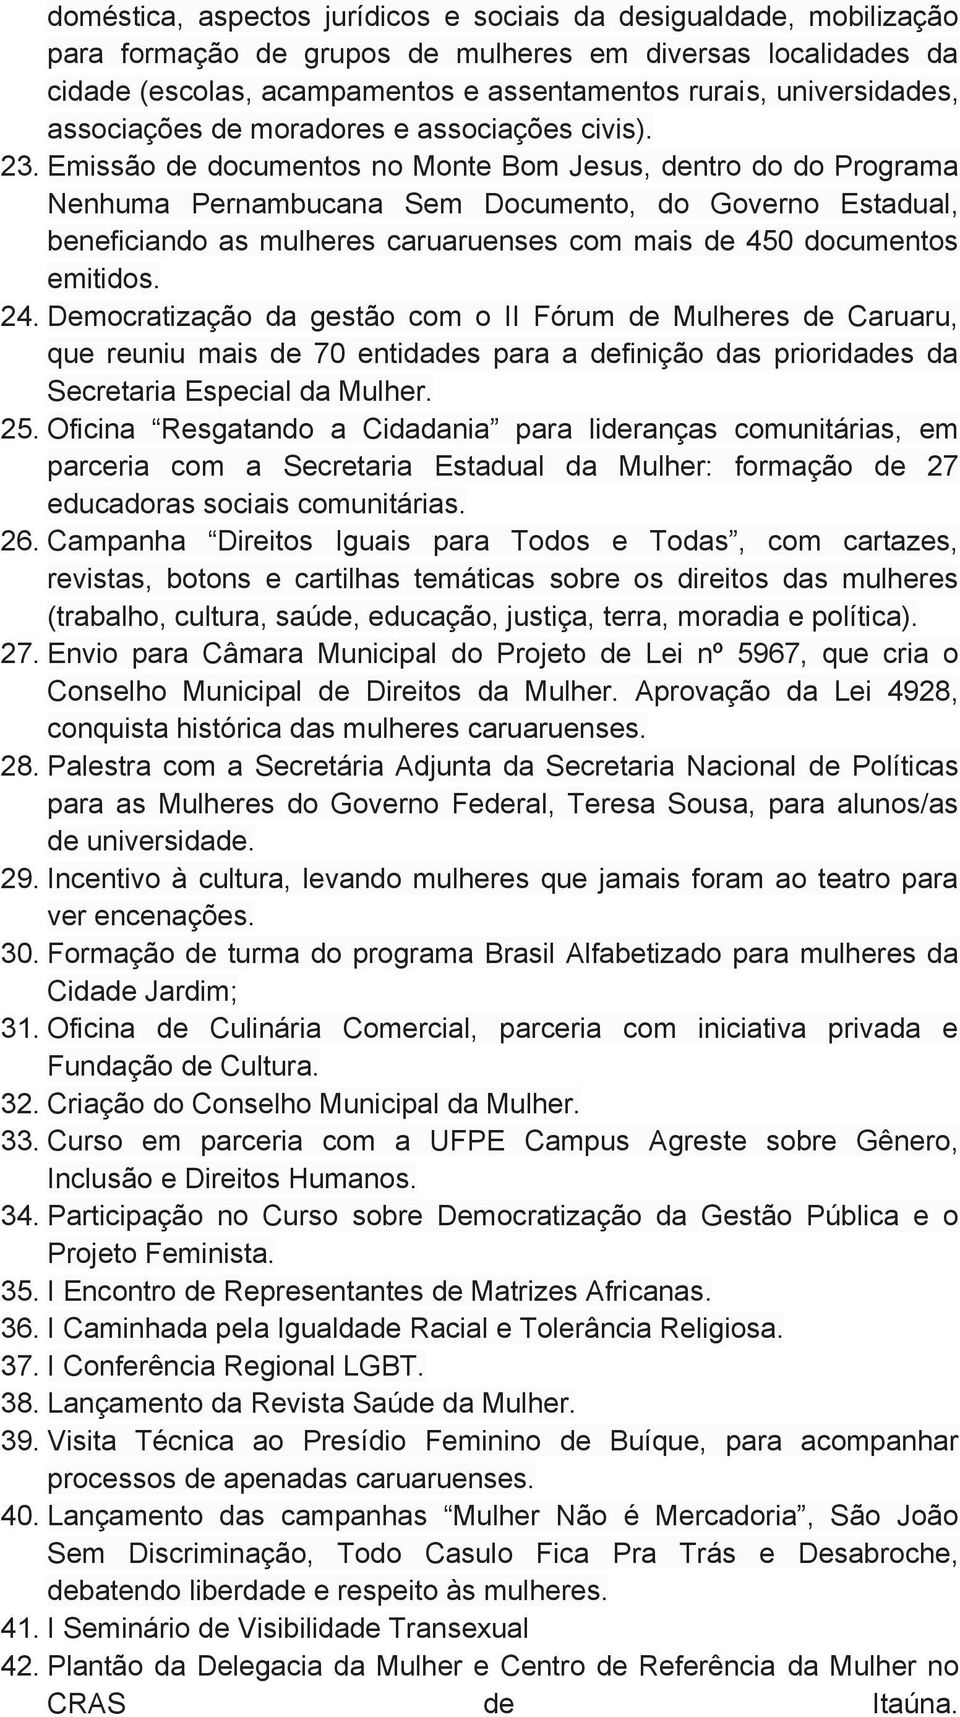 Emissão de documentos no Monte Bom Jesus, dentro do do Programa Nenhuma Pernambucana Sem Documento, do Governo Estadual, beneficiando as mulheres caruaruenses com mais de 450 documentos emitidos. 24.